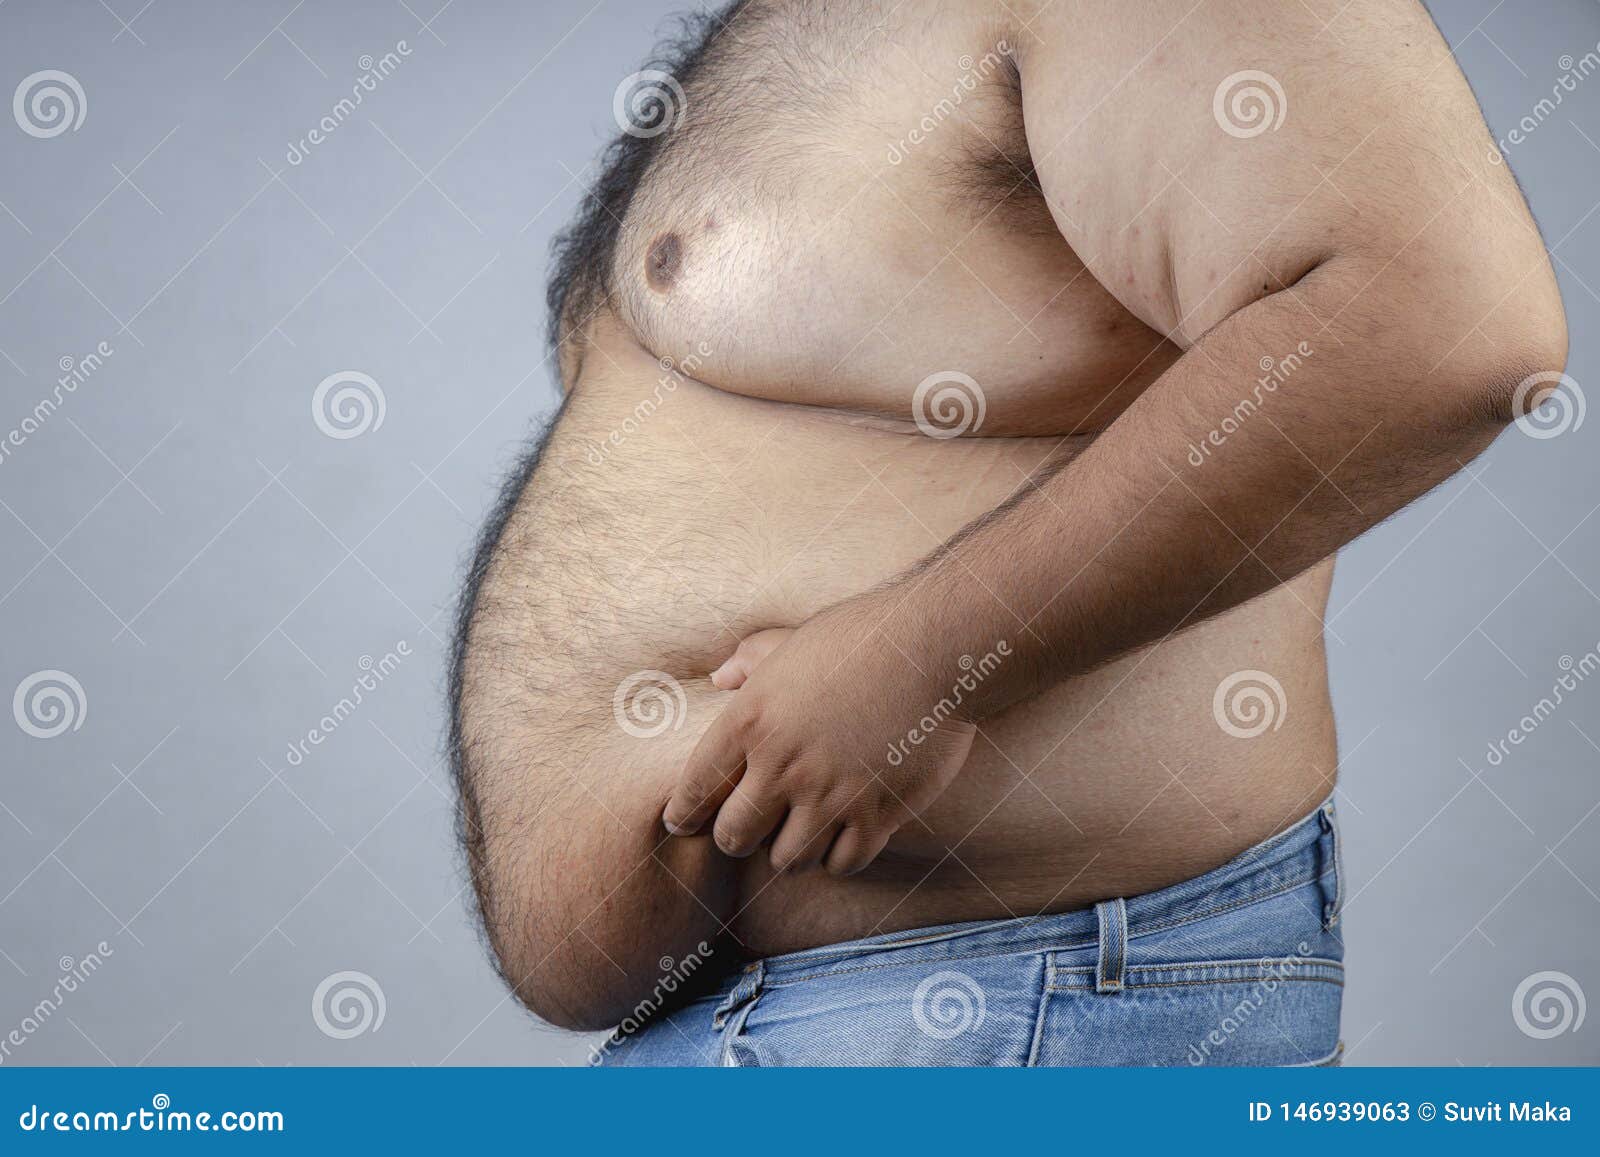 Толстый под жиром. Человек с большим животом.